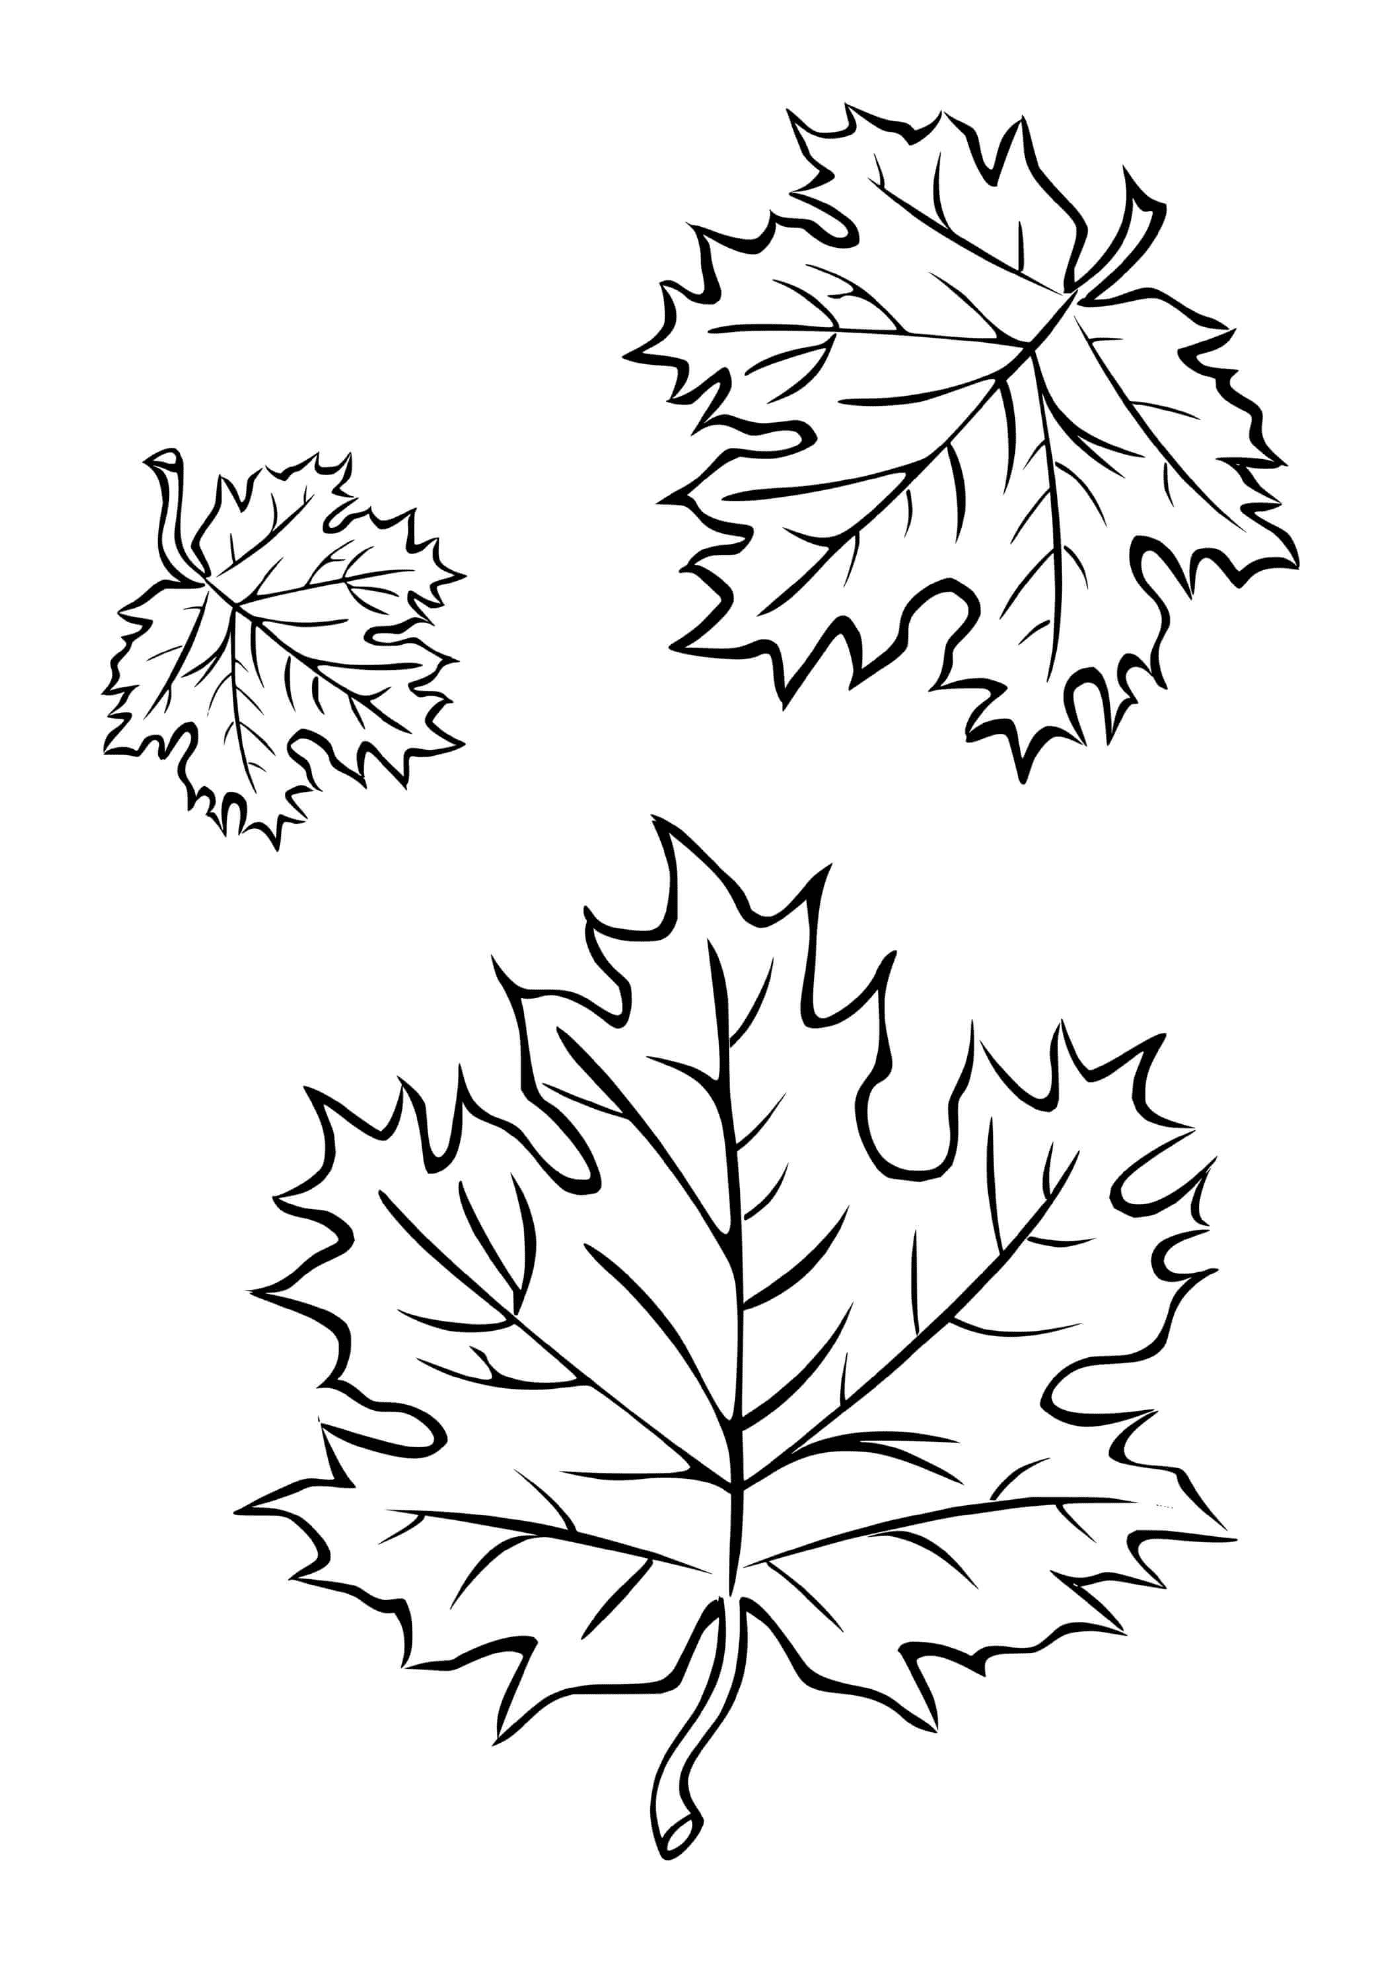  Tres hojas de otoño 